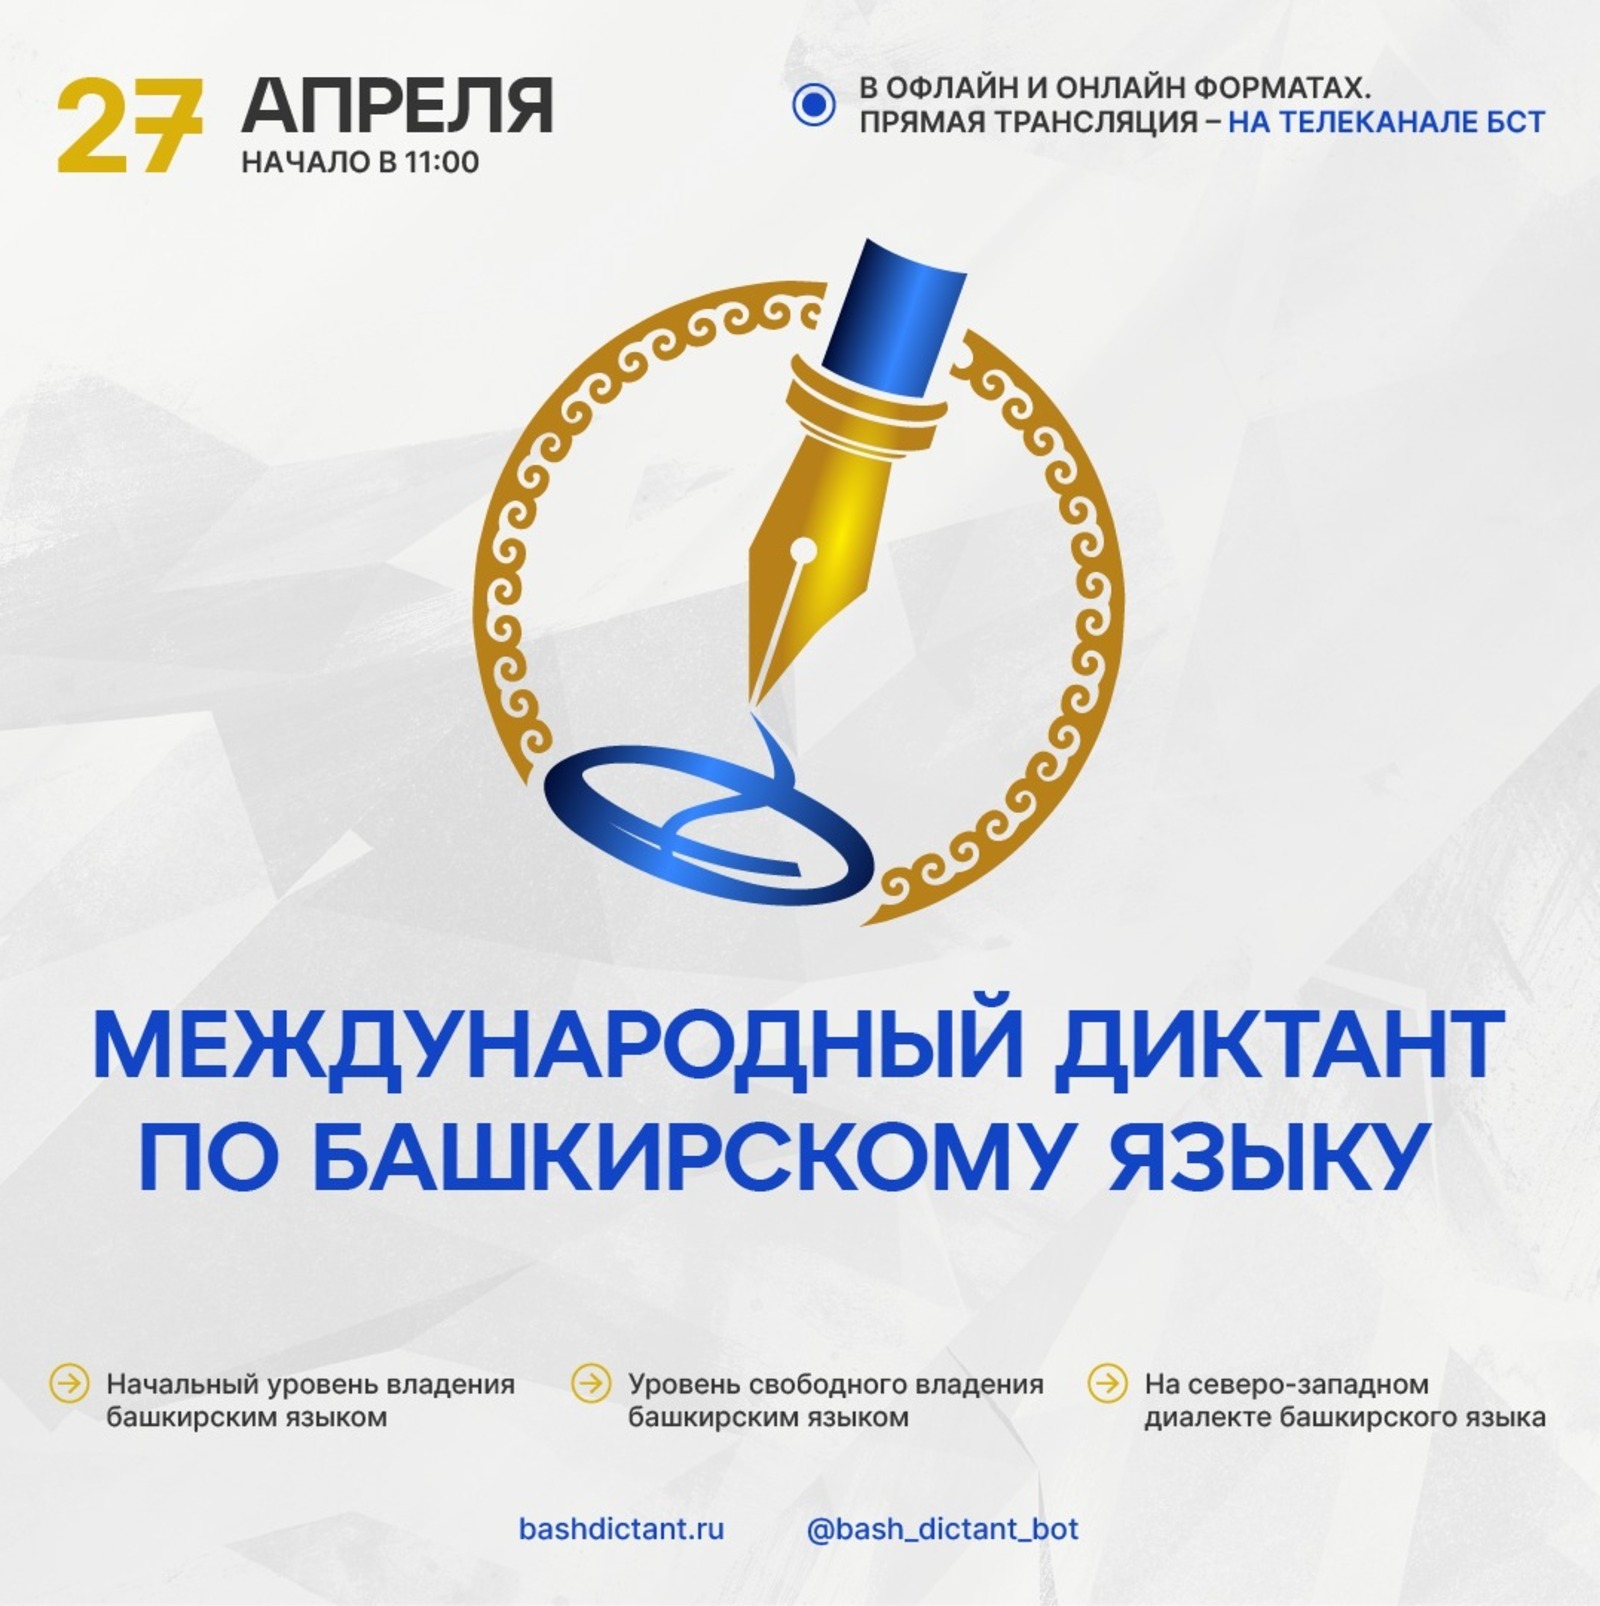 27 апреля пройдёт международный диктант по башкирскому языку